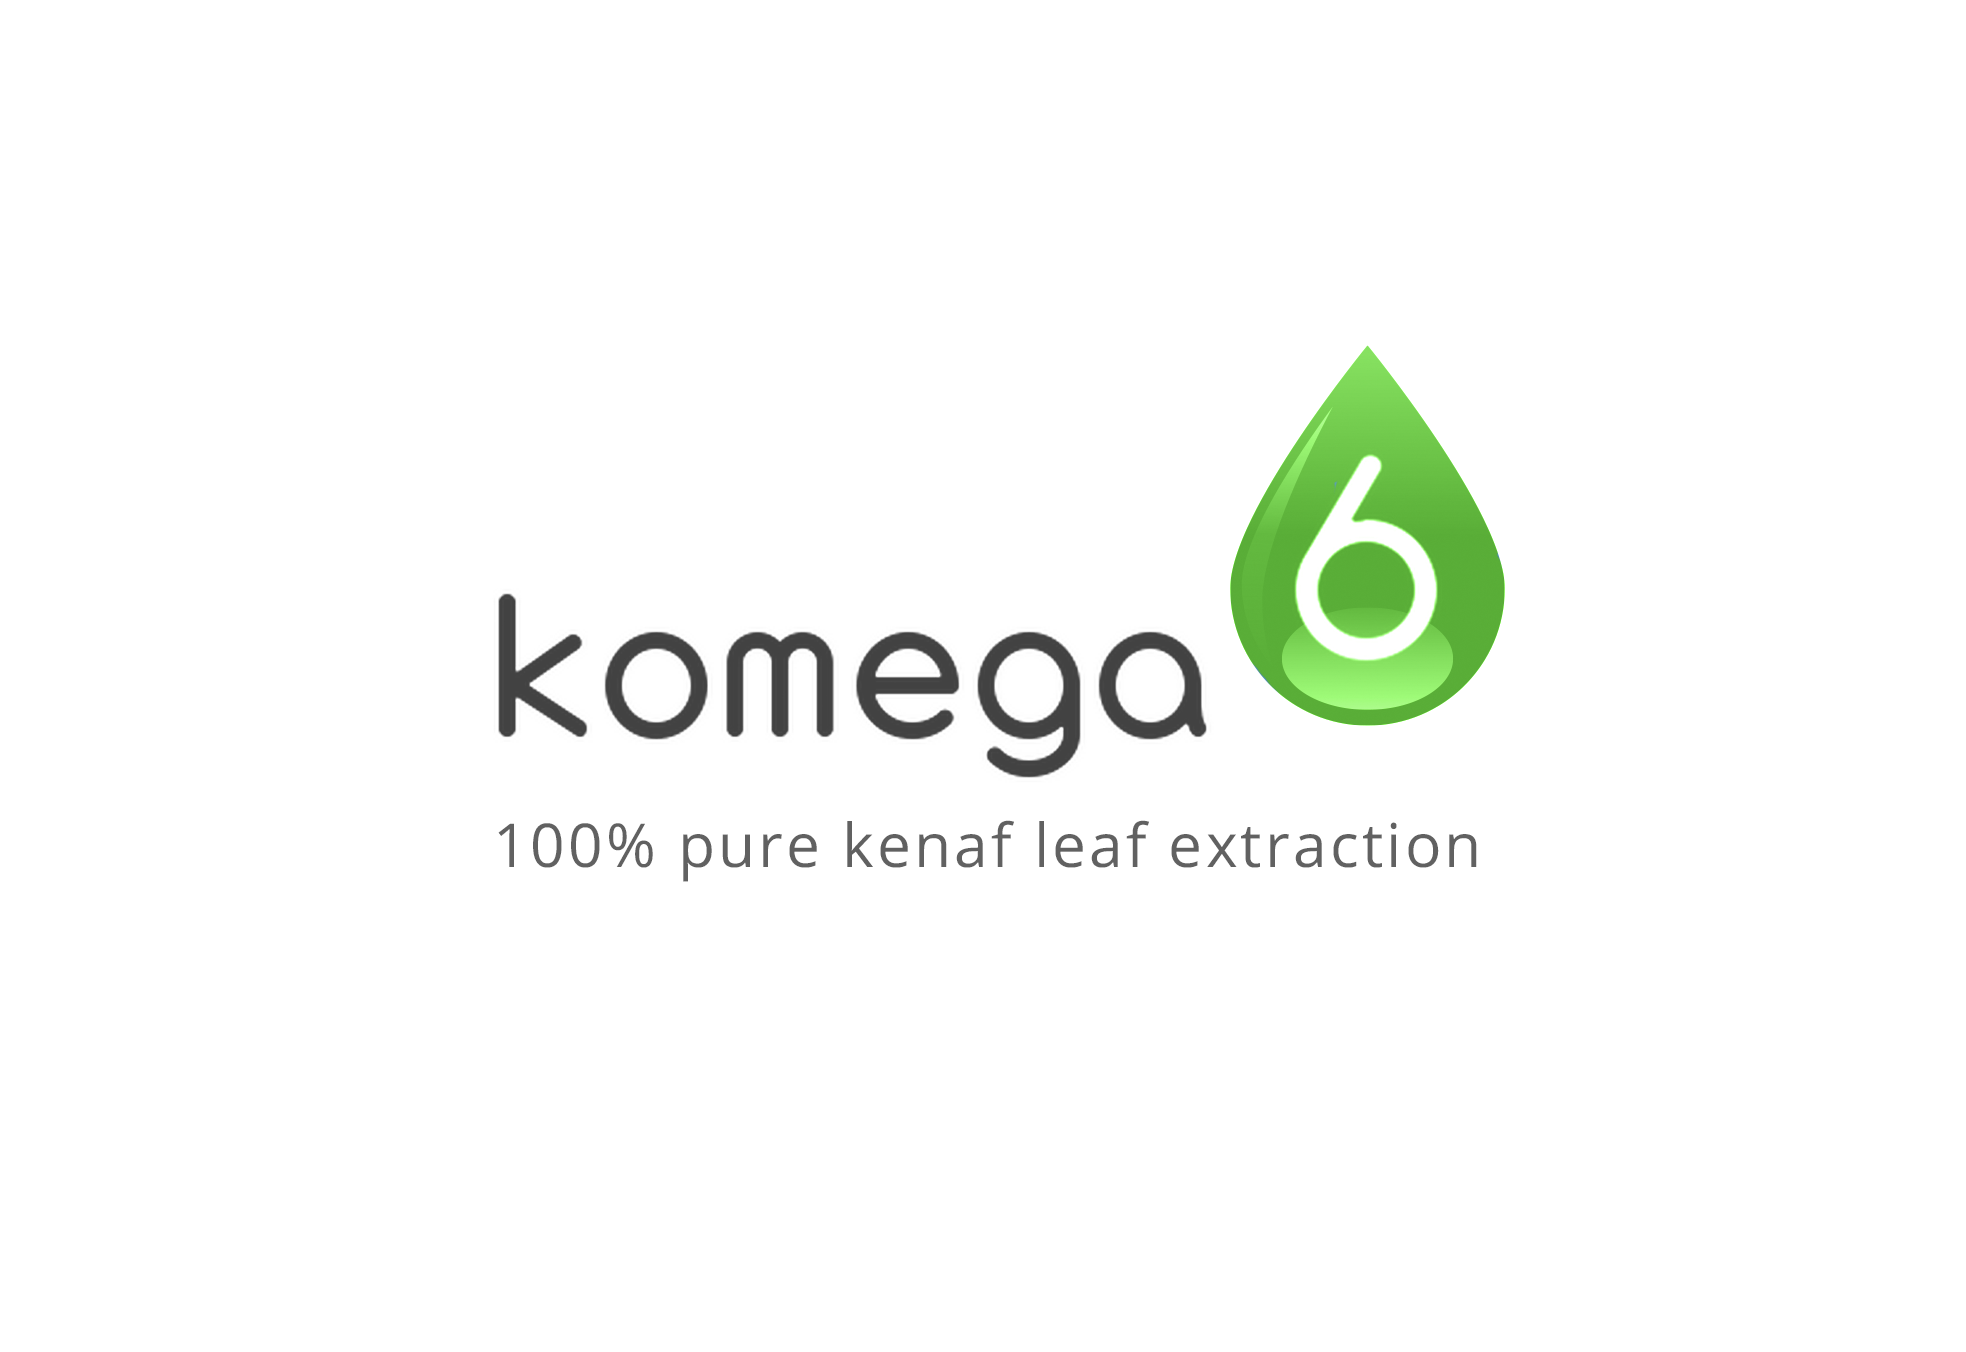 Komega6 a health and beauty brand available on Walmart.com